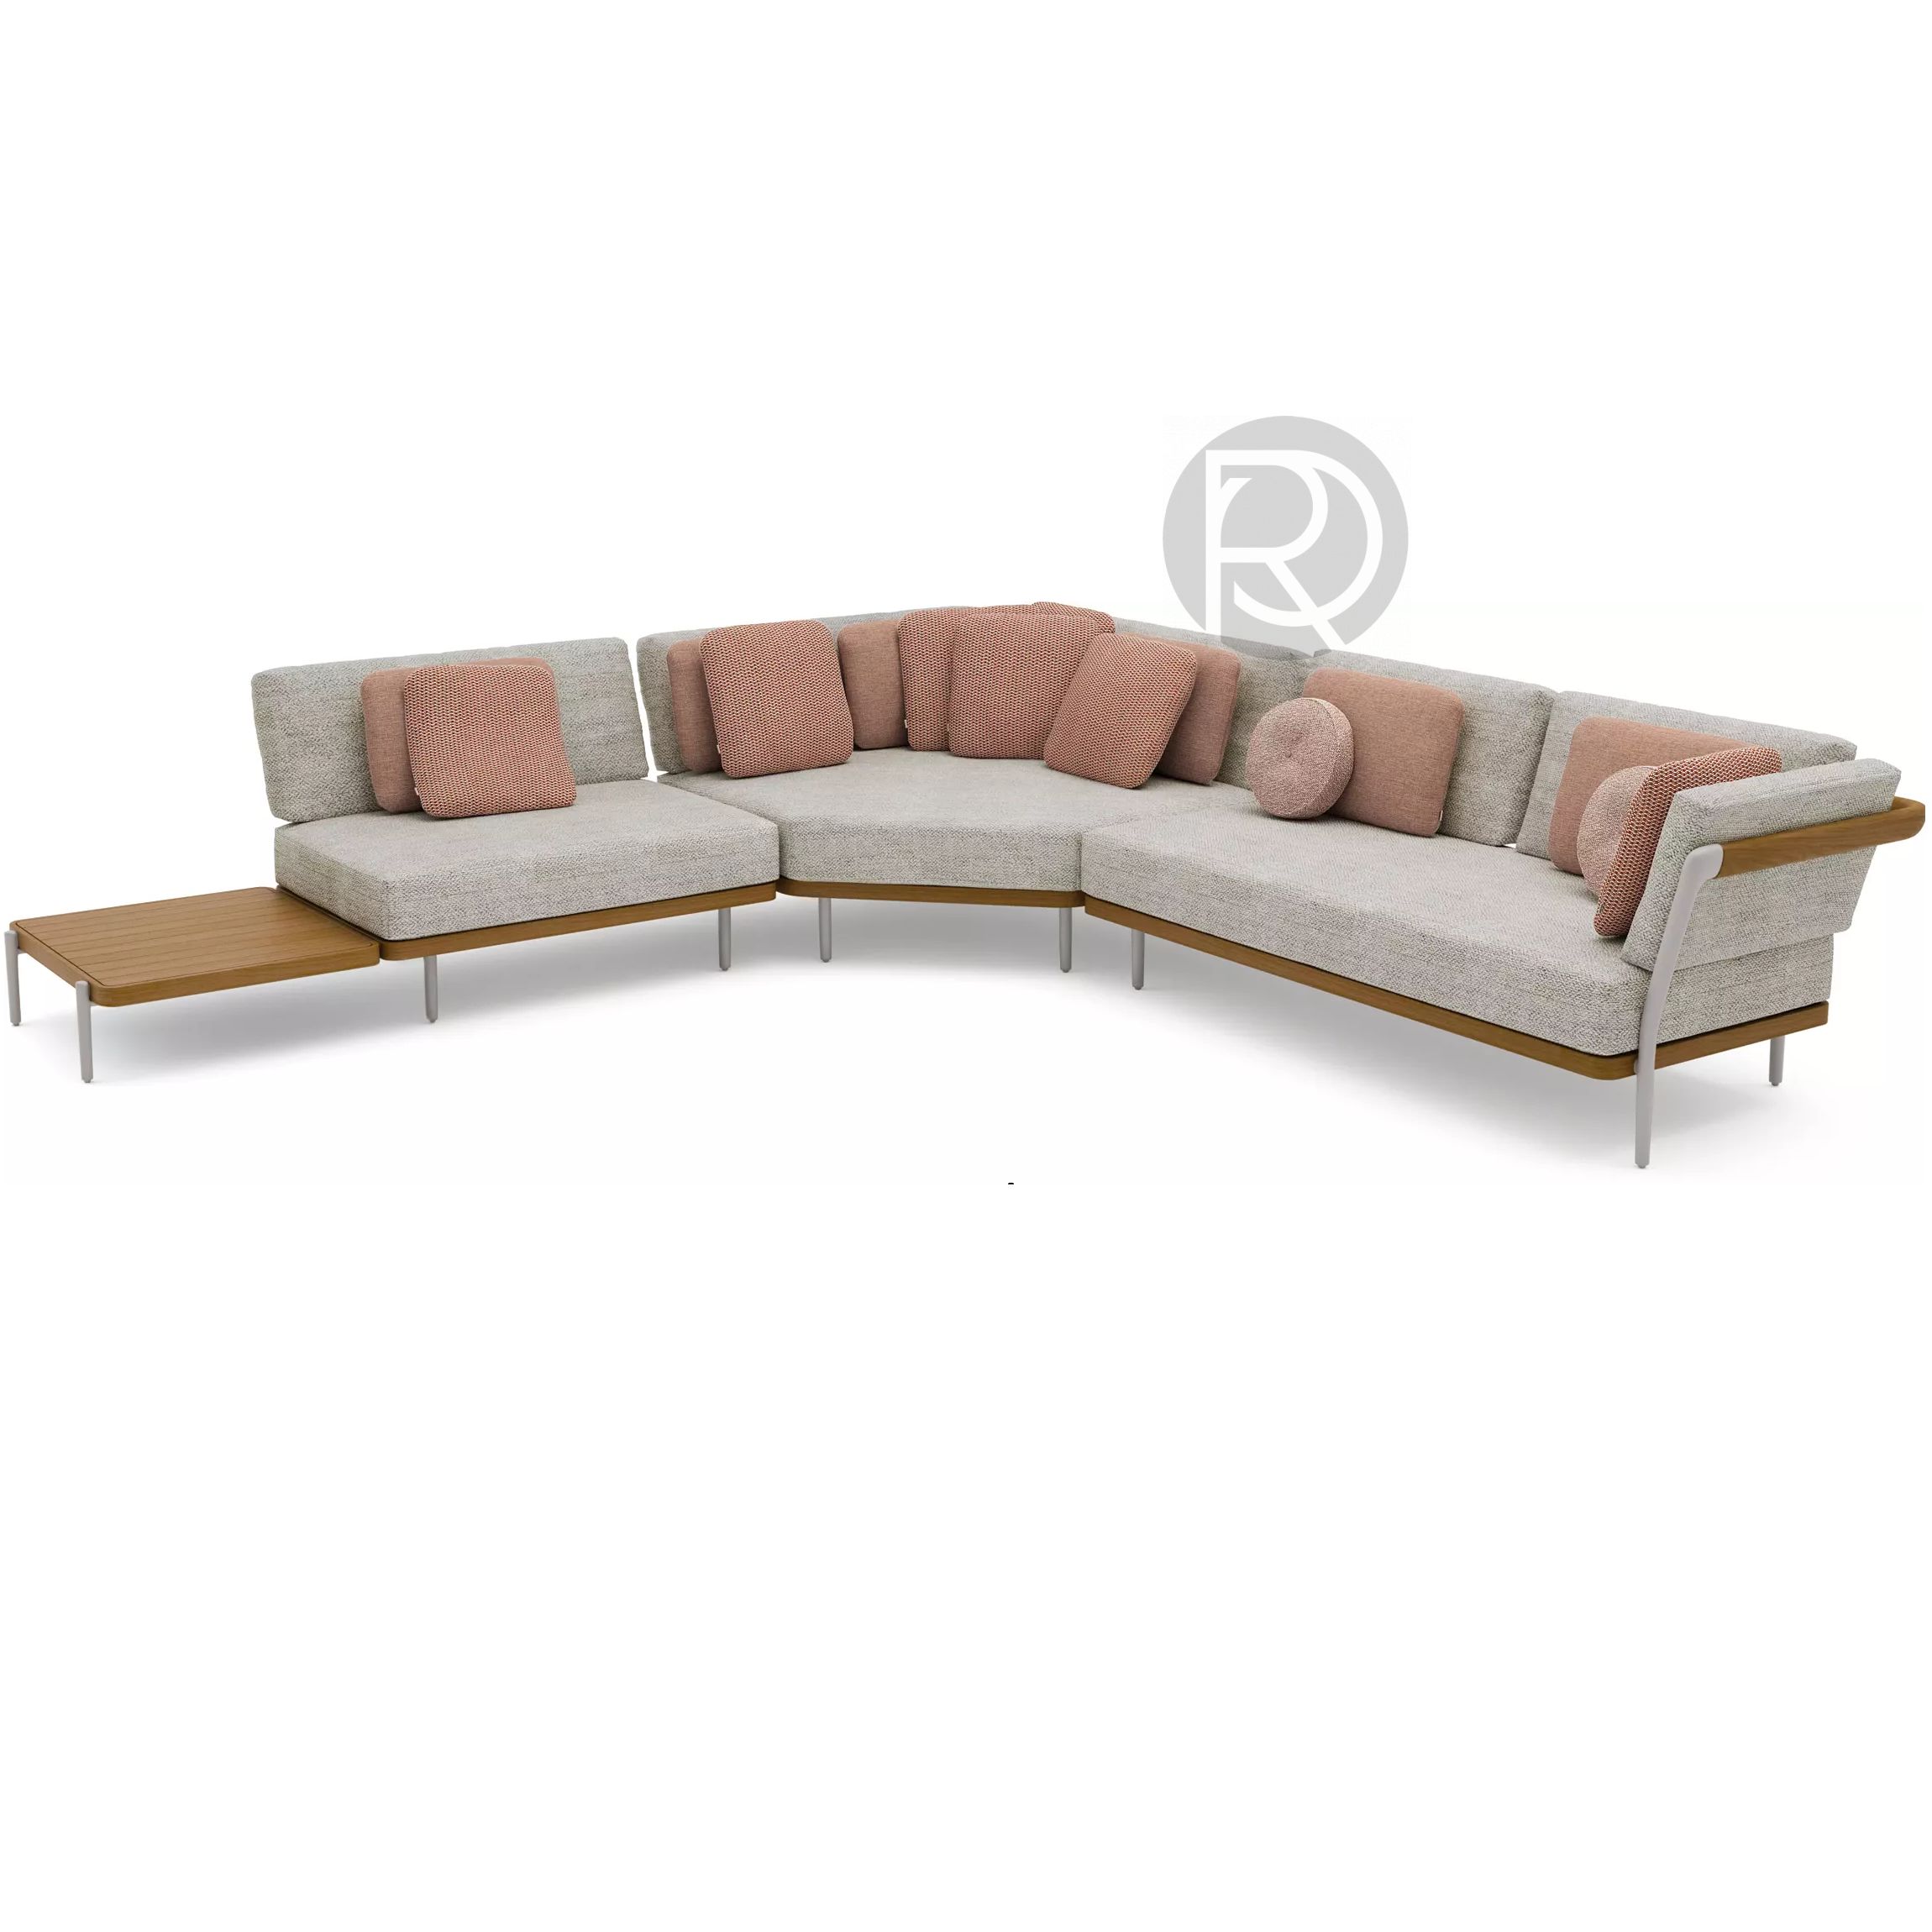 FLEX by Manutti furniture set